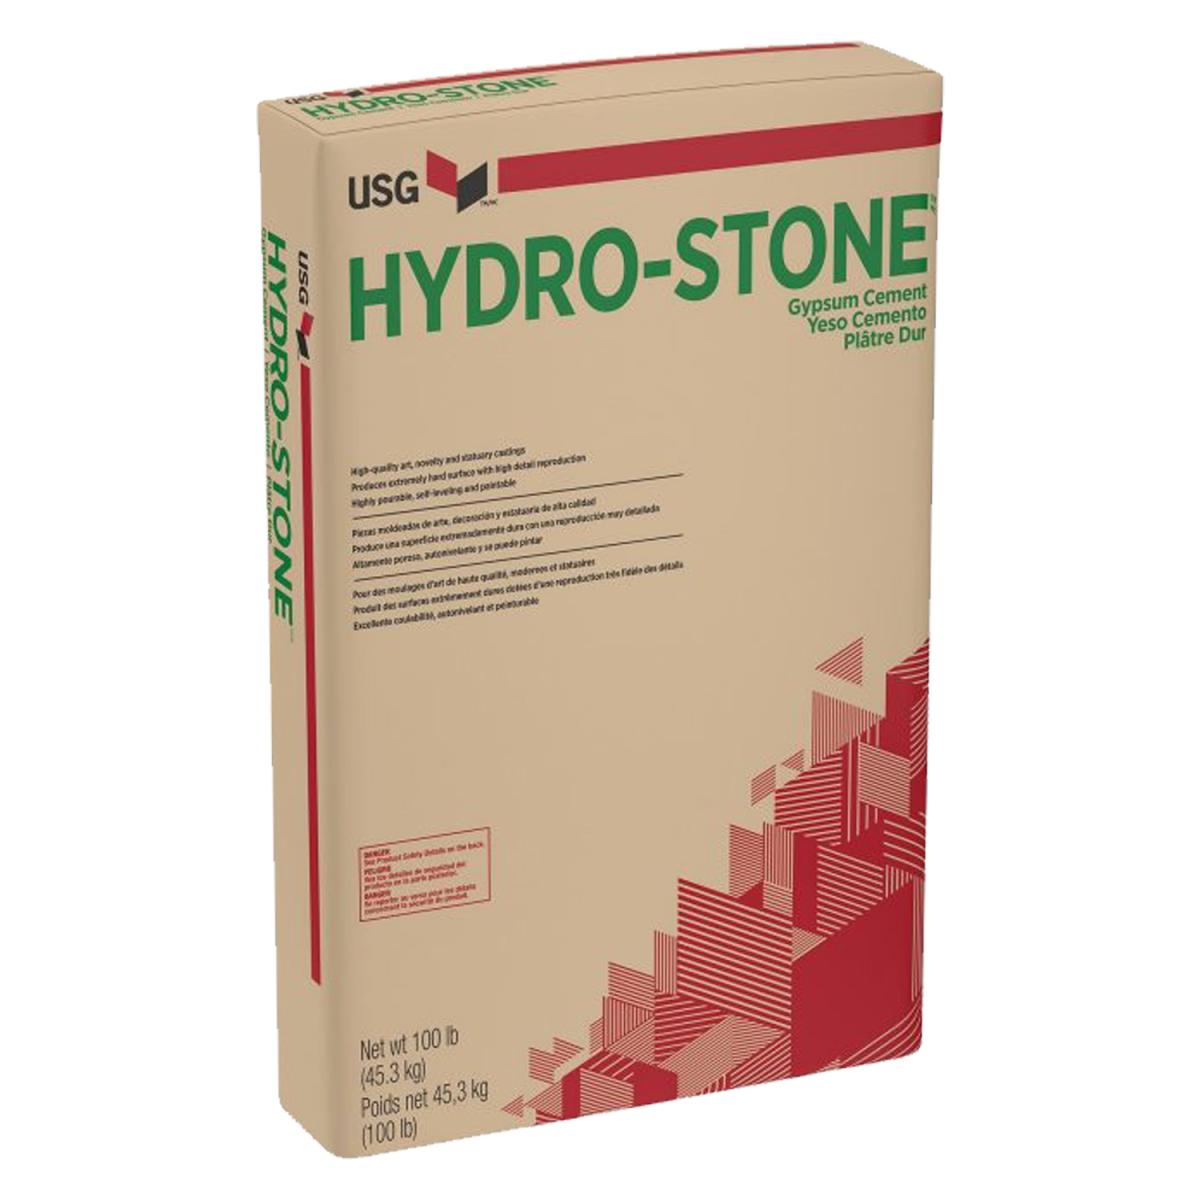 Hydrostone TB